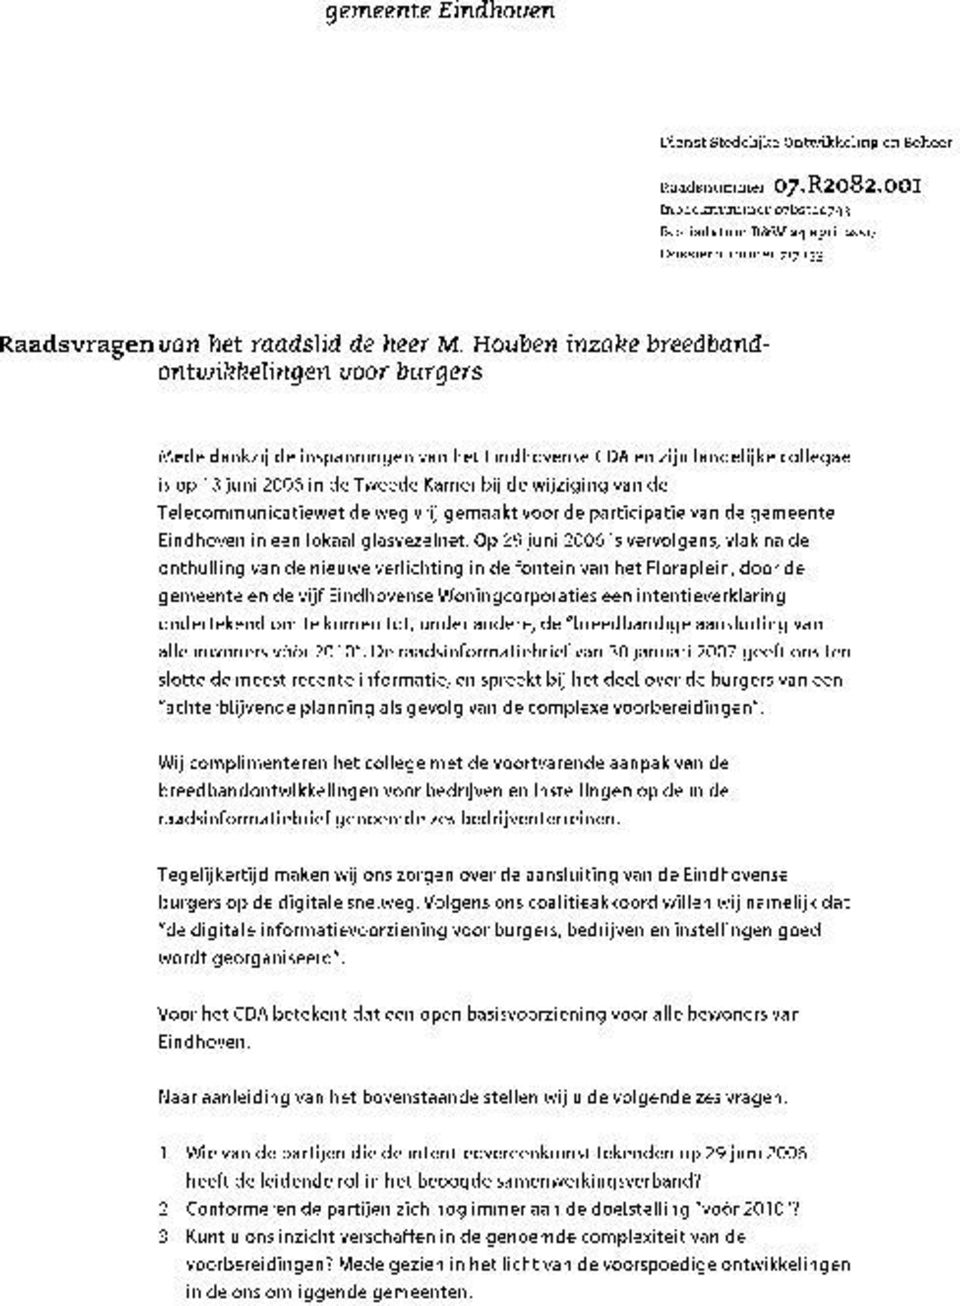 Houben inzake breedbandontwikkelingen voor burgers Mede dankzij de inspanningen van het Eindhovense CDA en zijn landelijke collegae is op 13 juni 2006 in de Tweede Kamer bij de wijziging van de